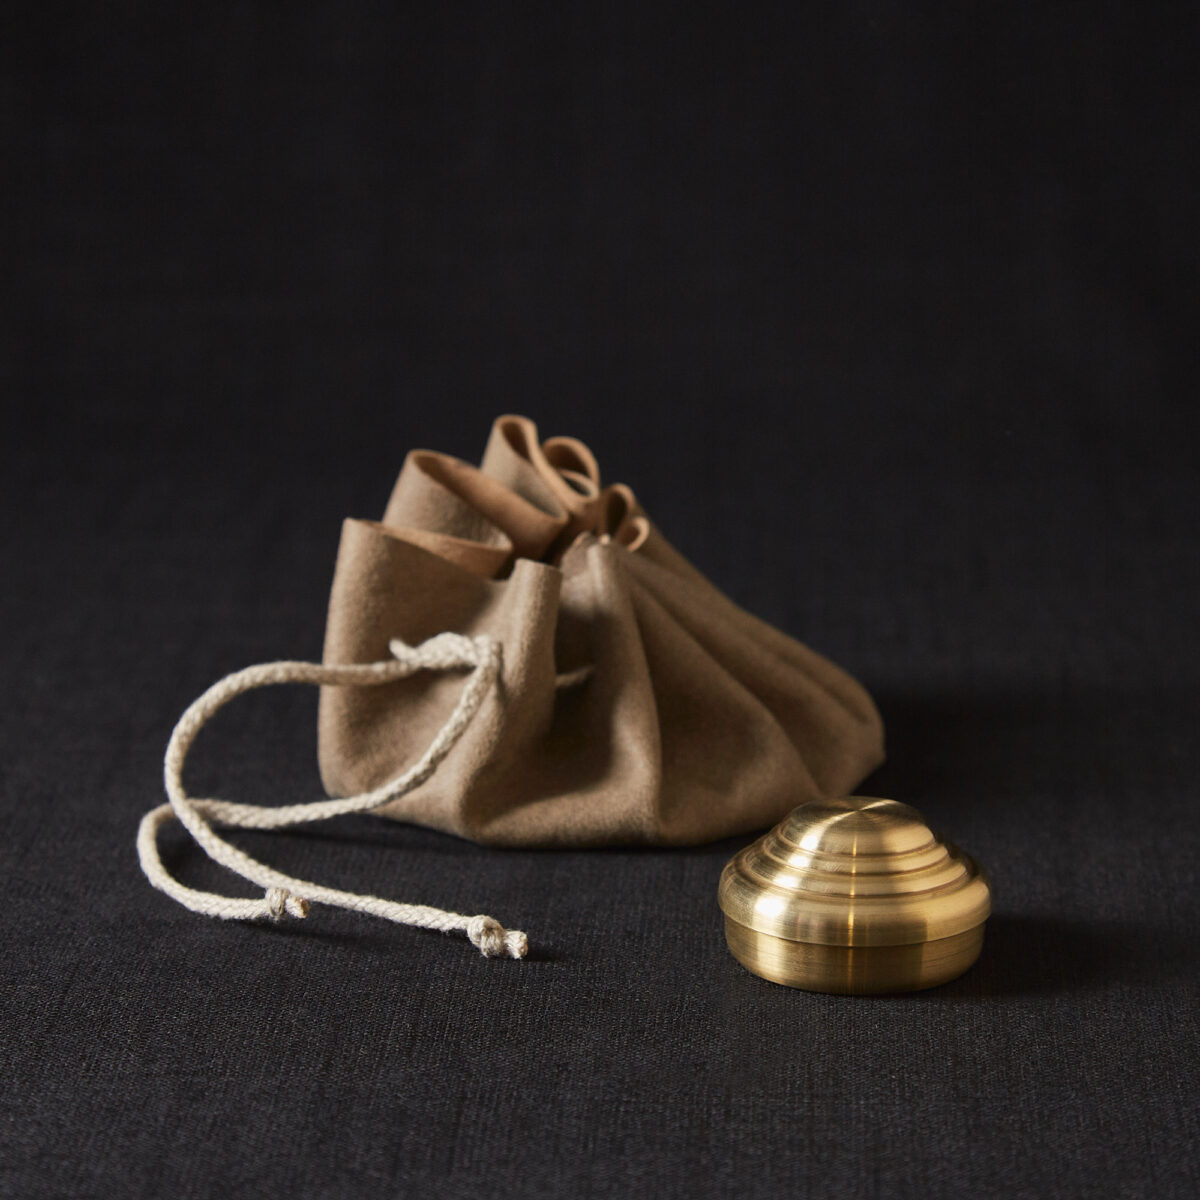 Gewürzdose von Jens Sierra Lingemann im Hausgemachtes Online Shop erhältlich in Kombination mit einem Säckchen aus Wildleder, verschließbar mit einer Kordel. Die Dose glänzt metallisch und ist rund, mit Abstufungen im Deckel.